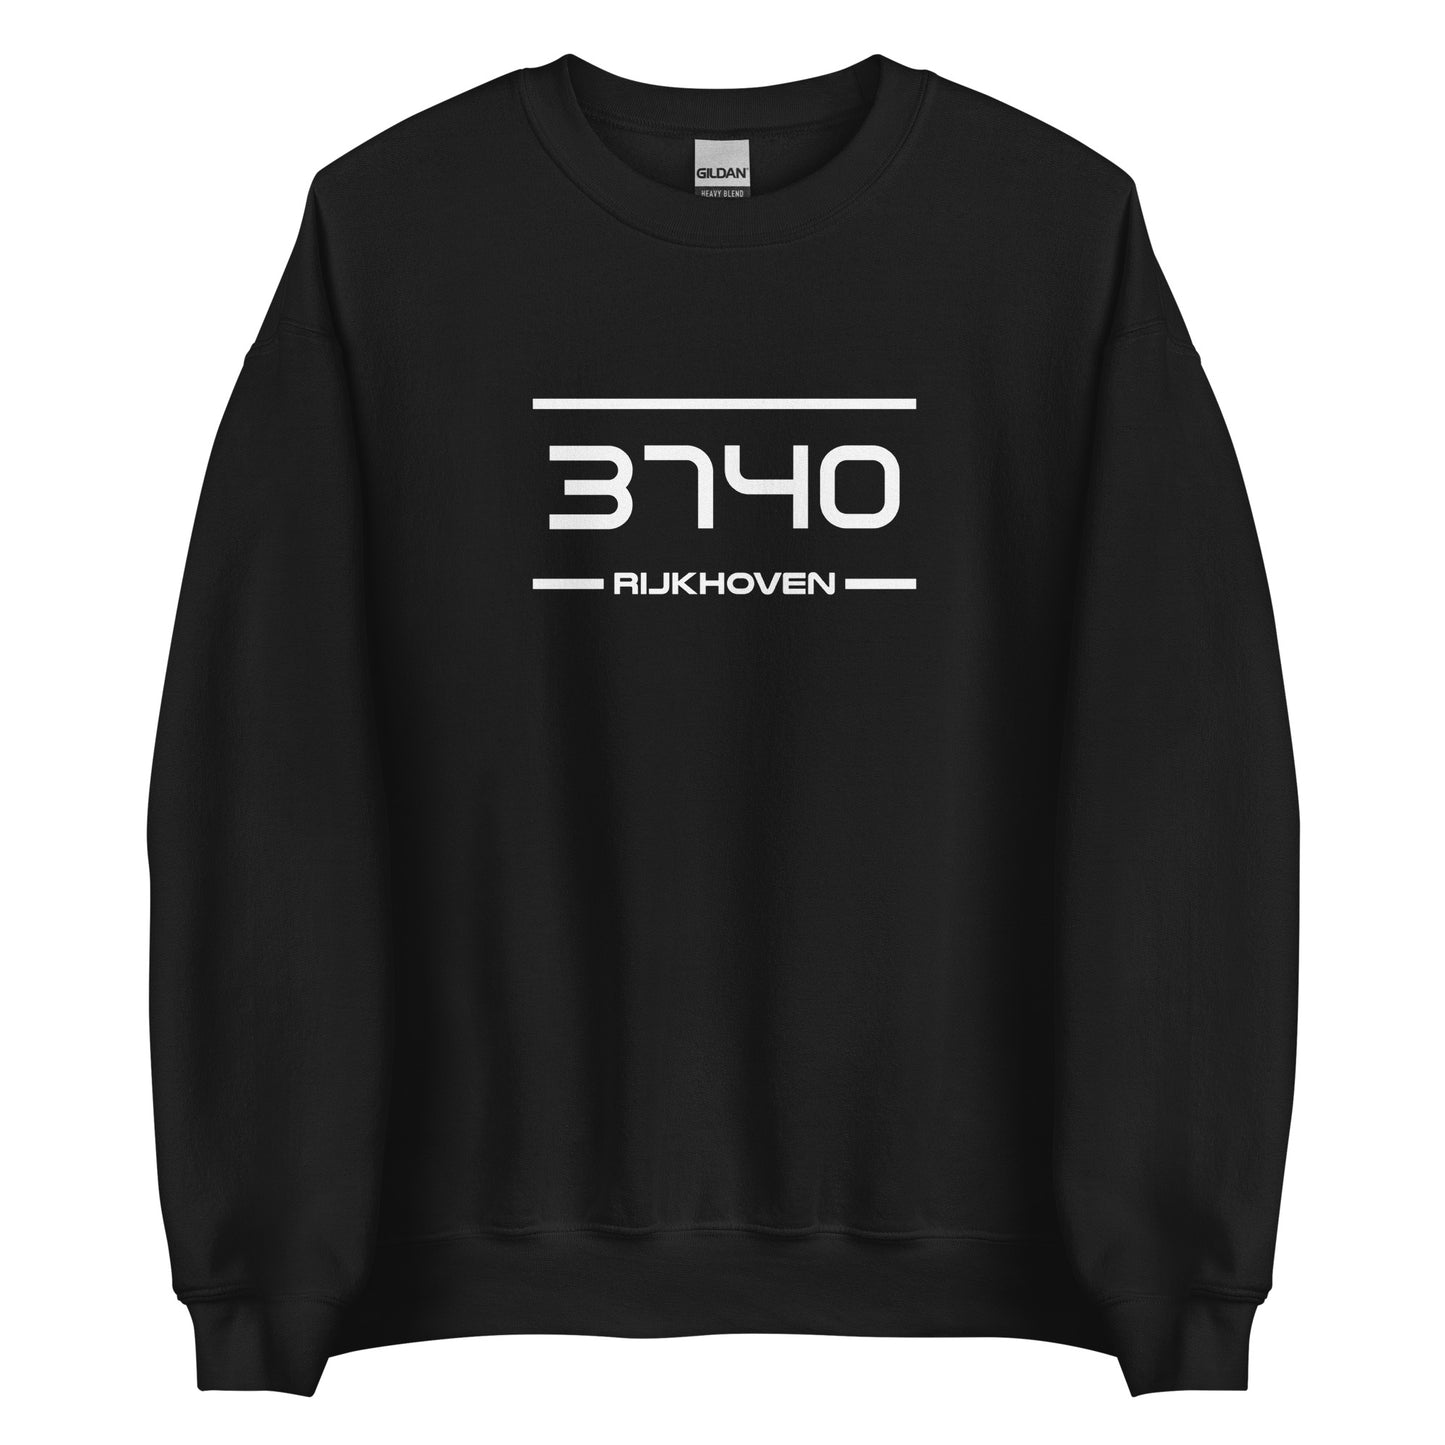 Sweater- 3740 - Rijkhoven (M/V)